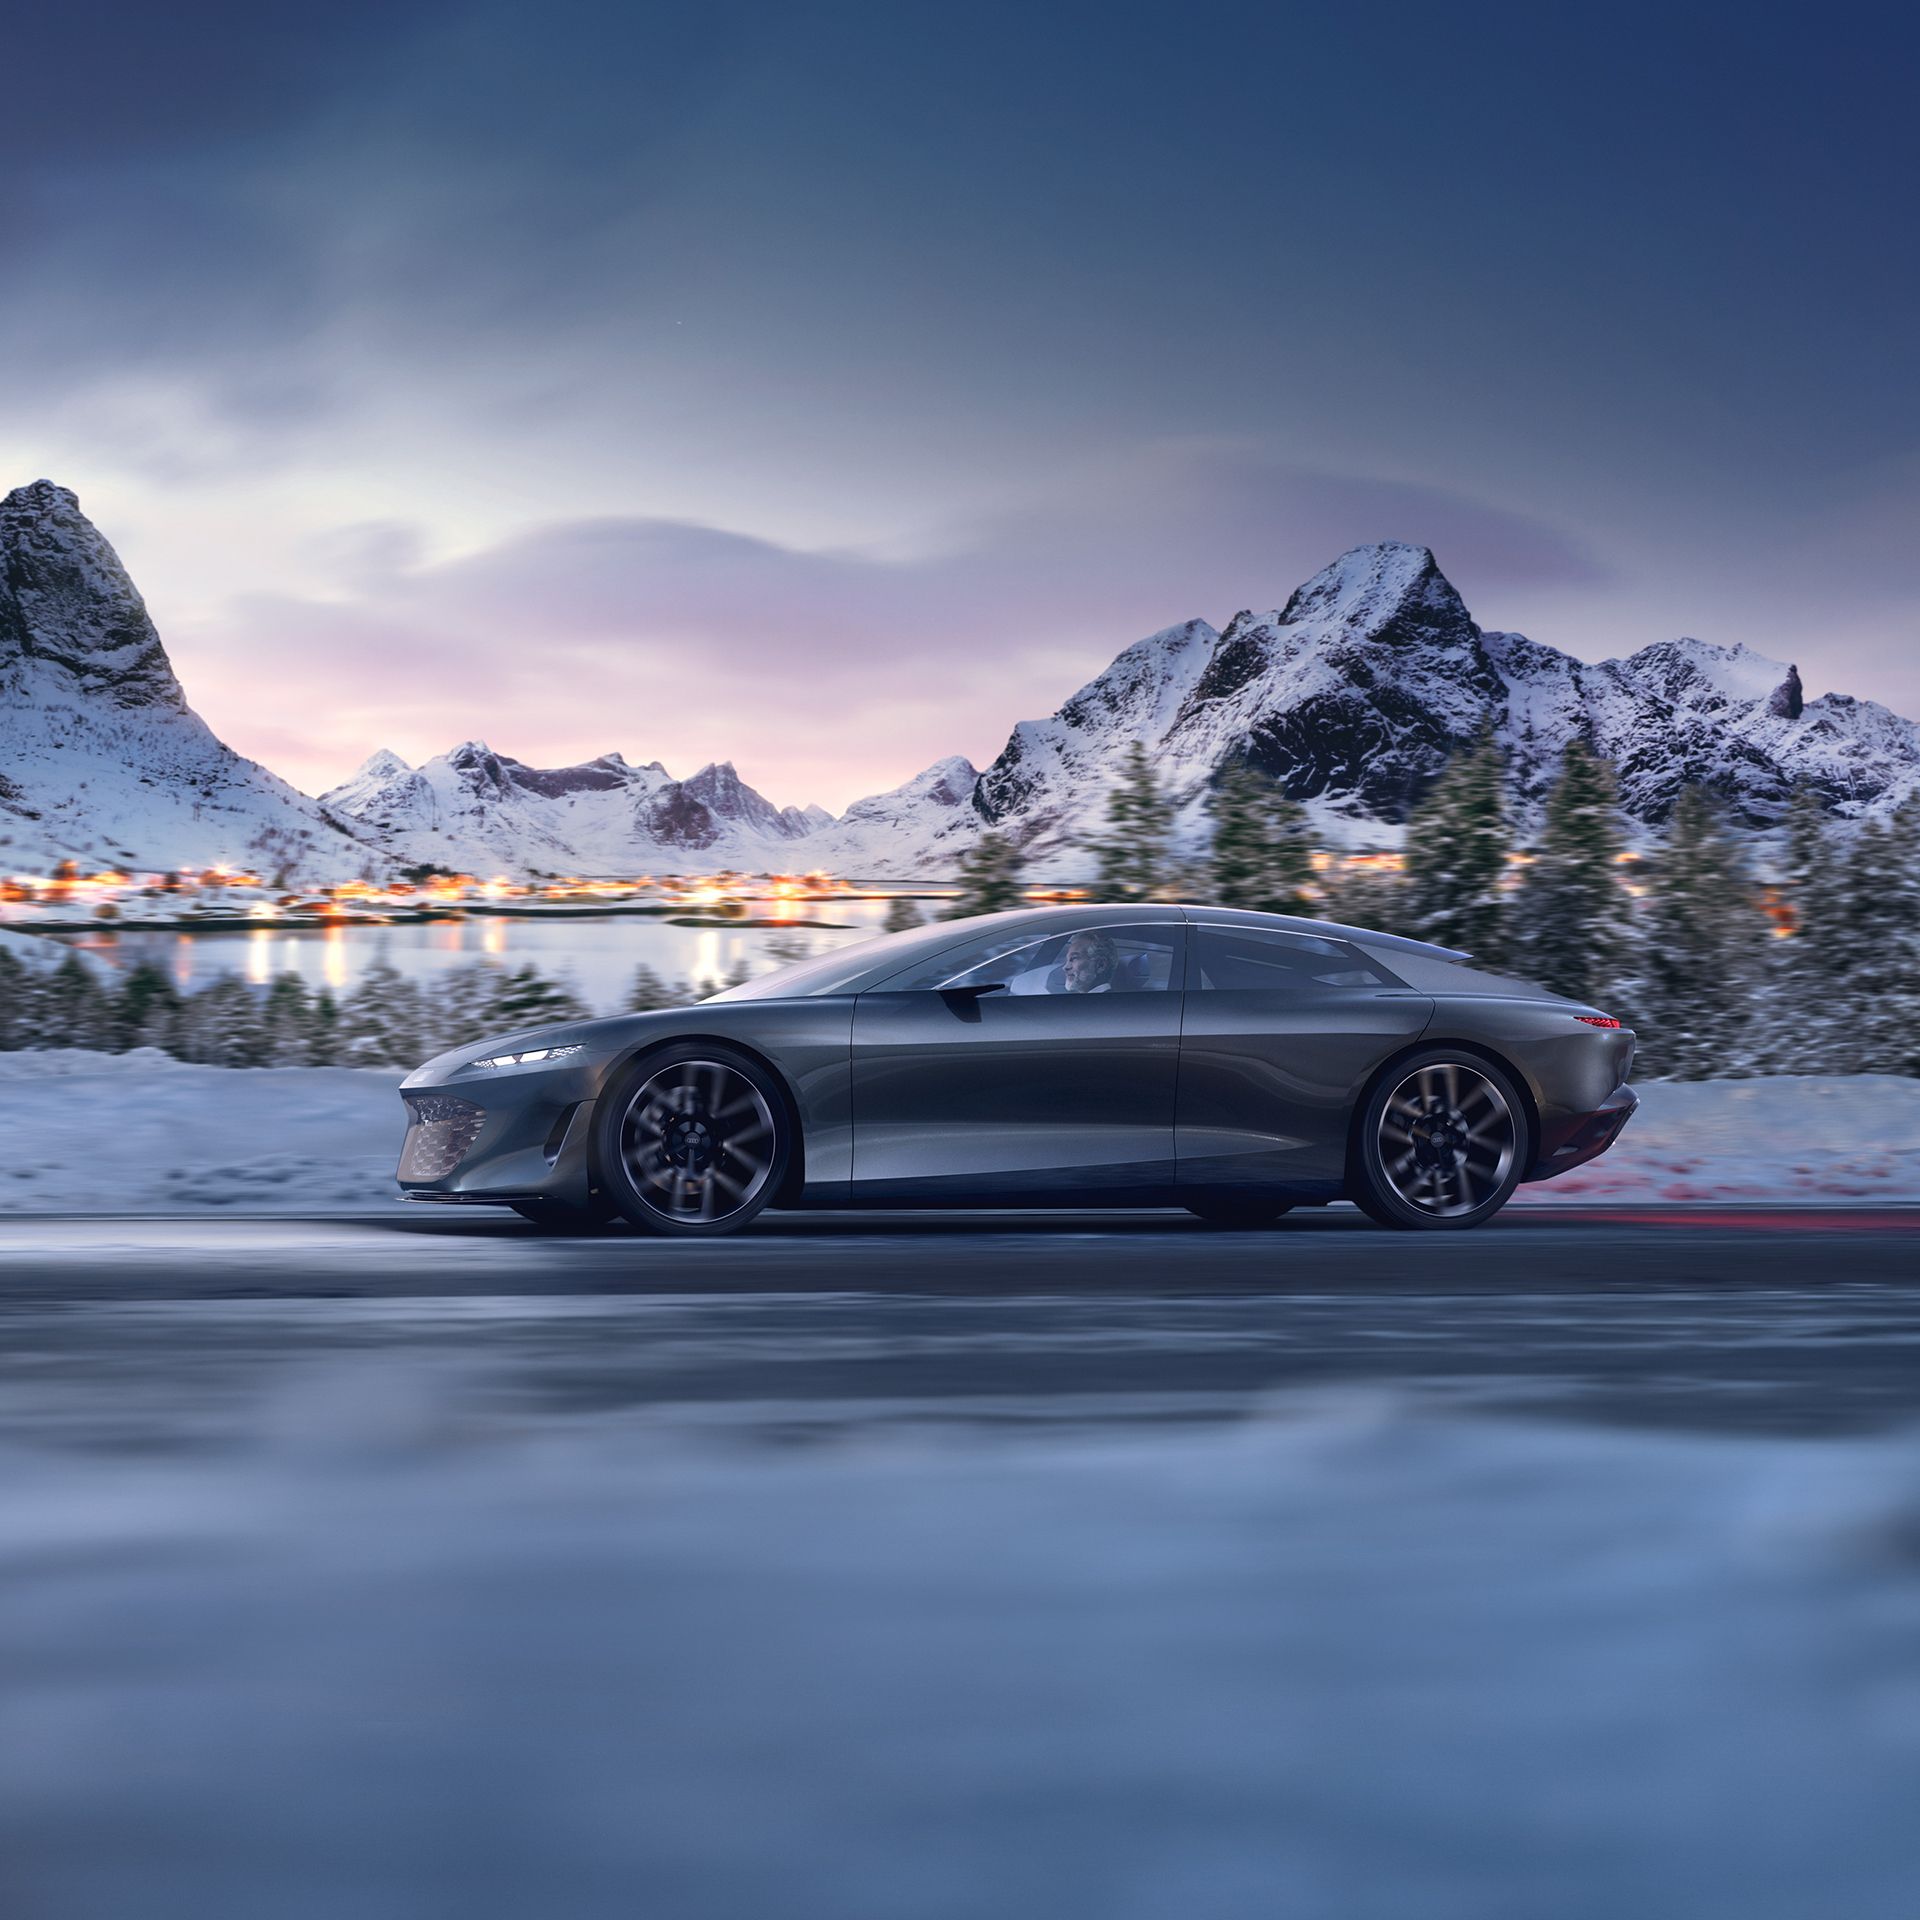 Bir kış manzarasında Audi grandsphere concept.